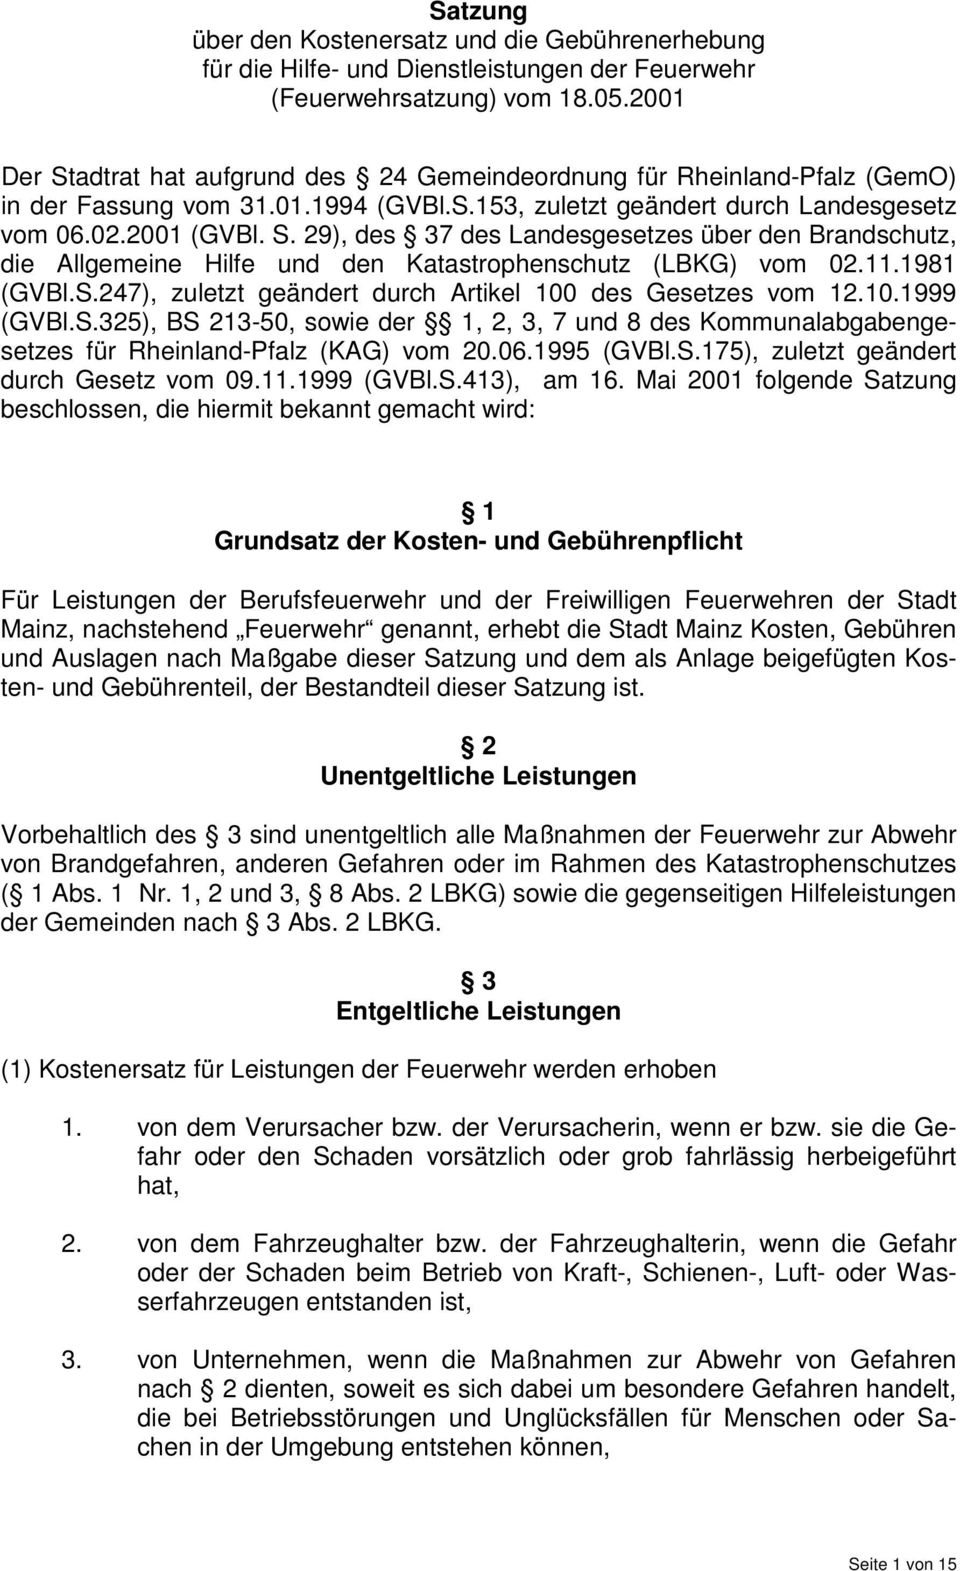 11.1981 (GVBl.S.247), zuletzt geändert durch Artikel 100 des Gesetzes vom 12.10.1999 (GVBl.S.325), BS 213-50, sowie der 1, 2, 3, 7 und 8 des Kommunalabgabengesetzes für Rheinland-Pfalz (KAG) vom 20.